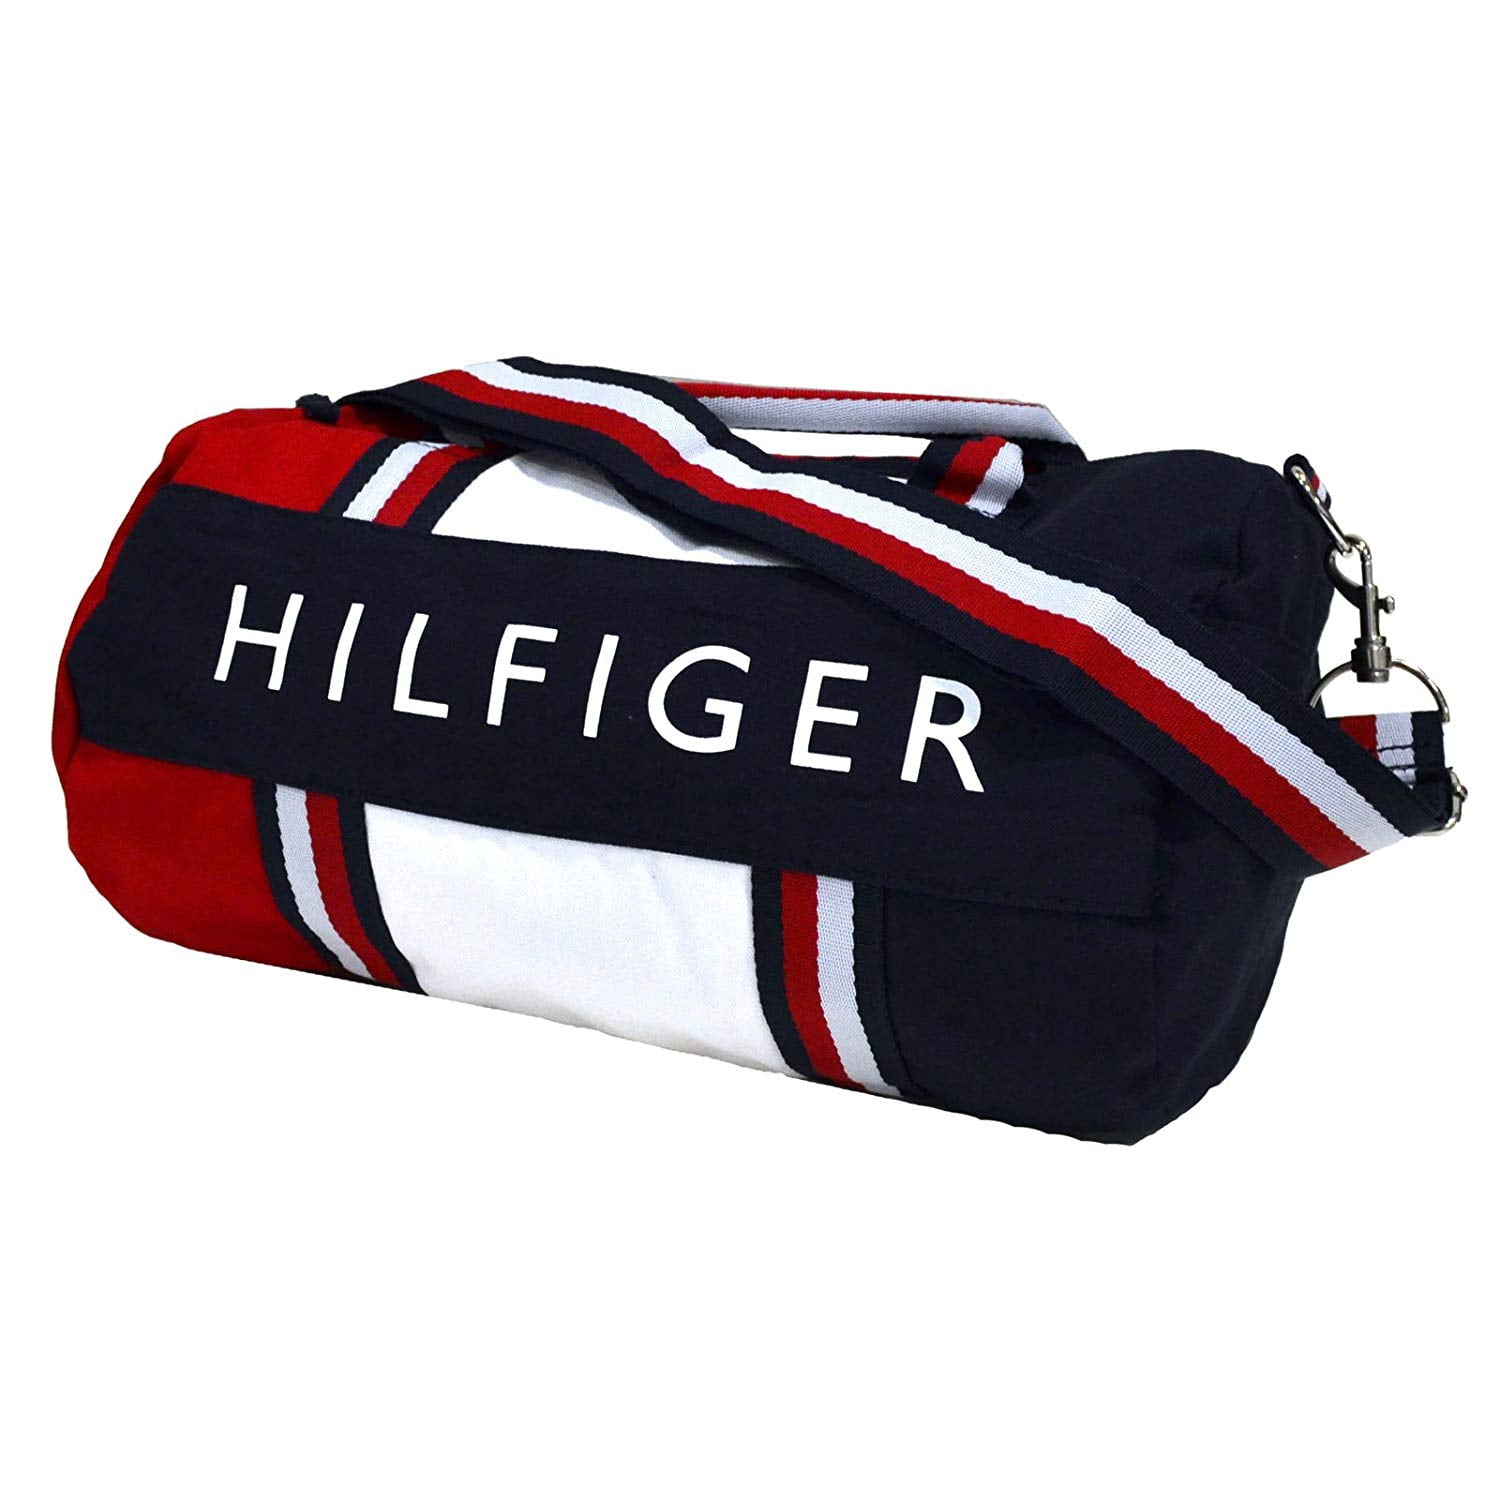 Plastic Original New Travel Bag Tommy Hilfiger Large Duffle Bag GYM Bag 